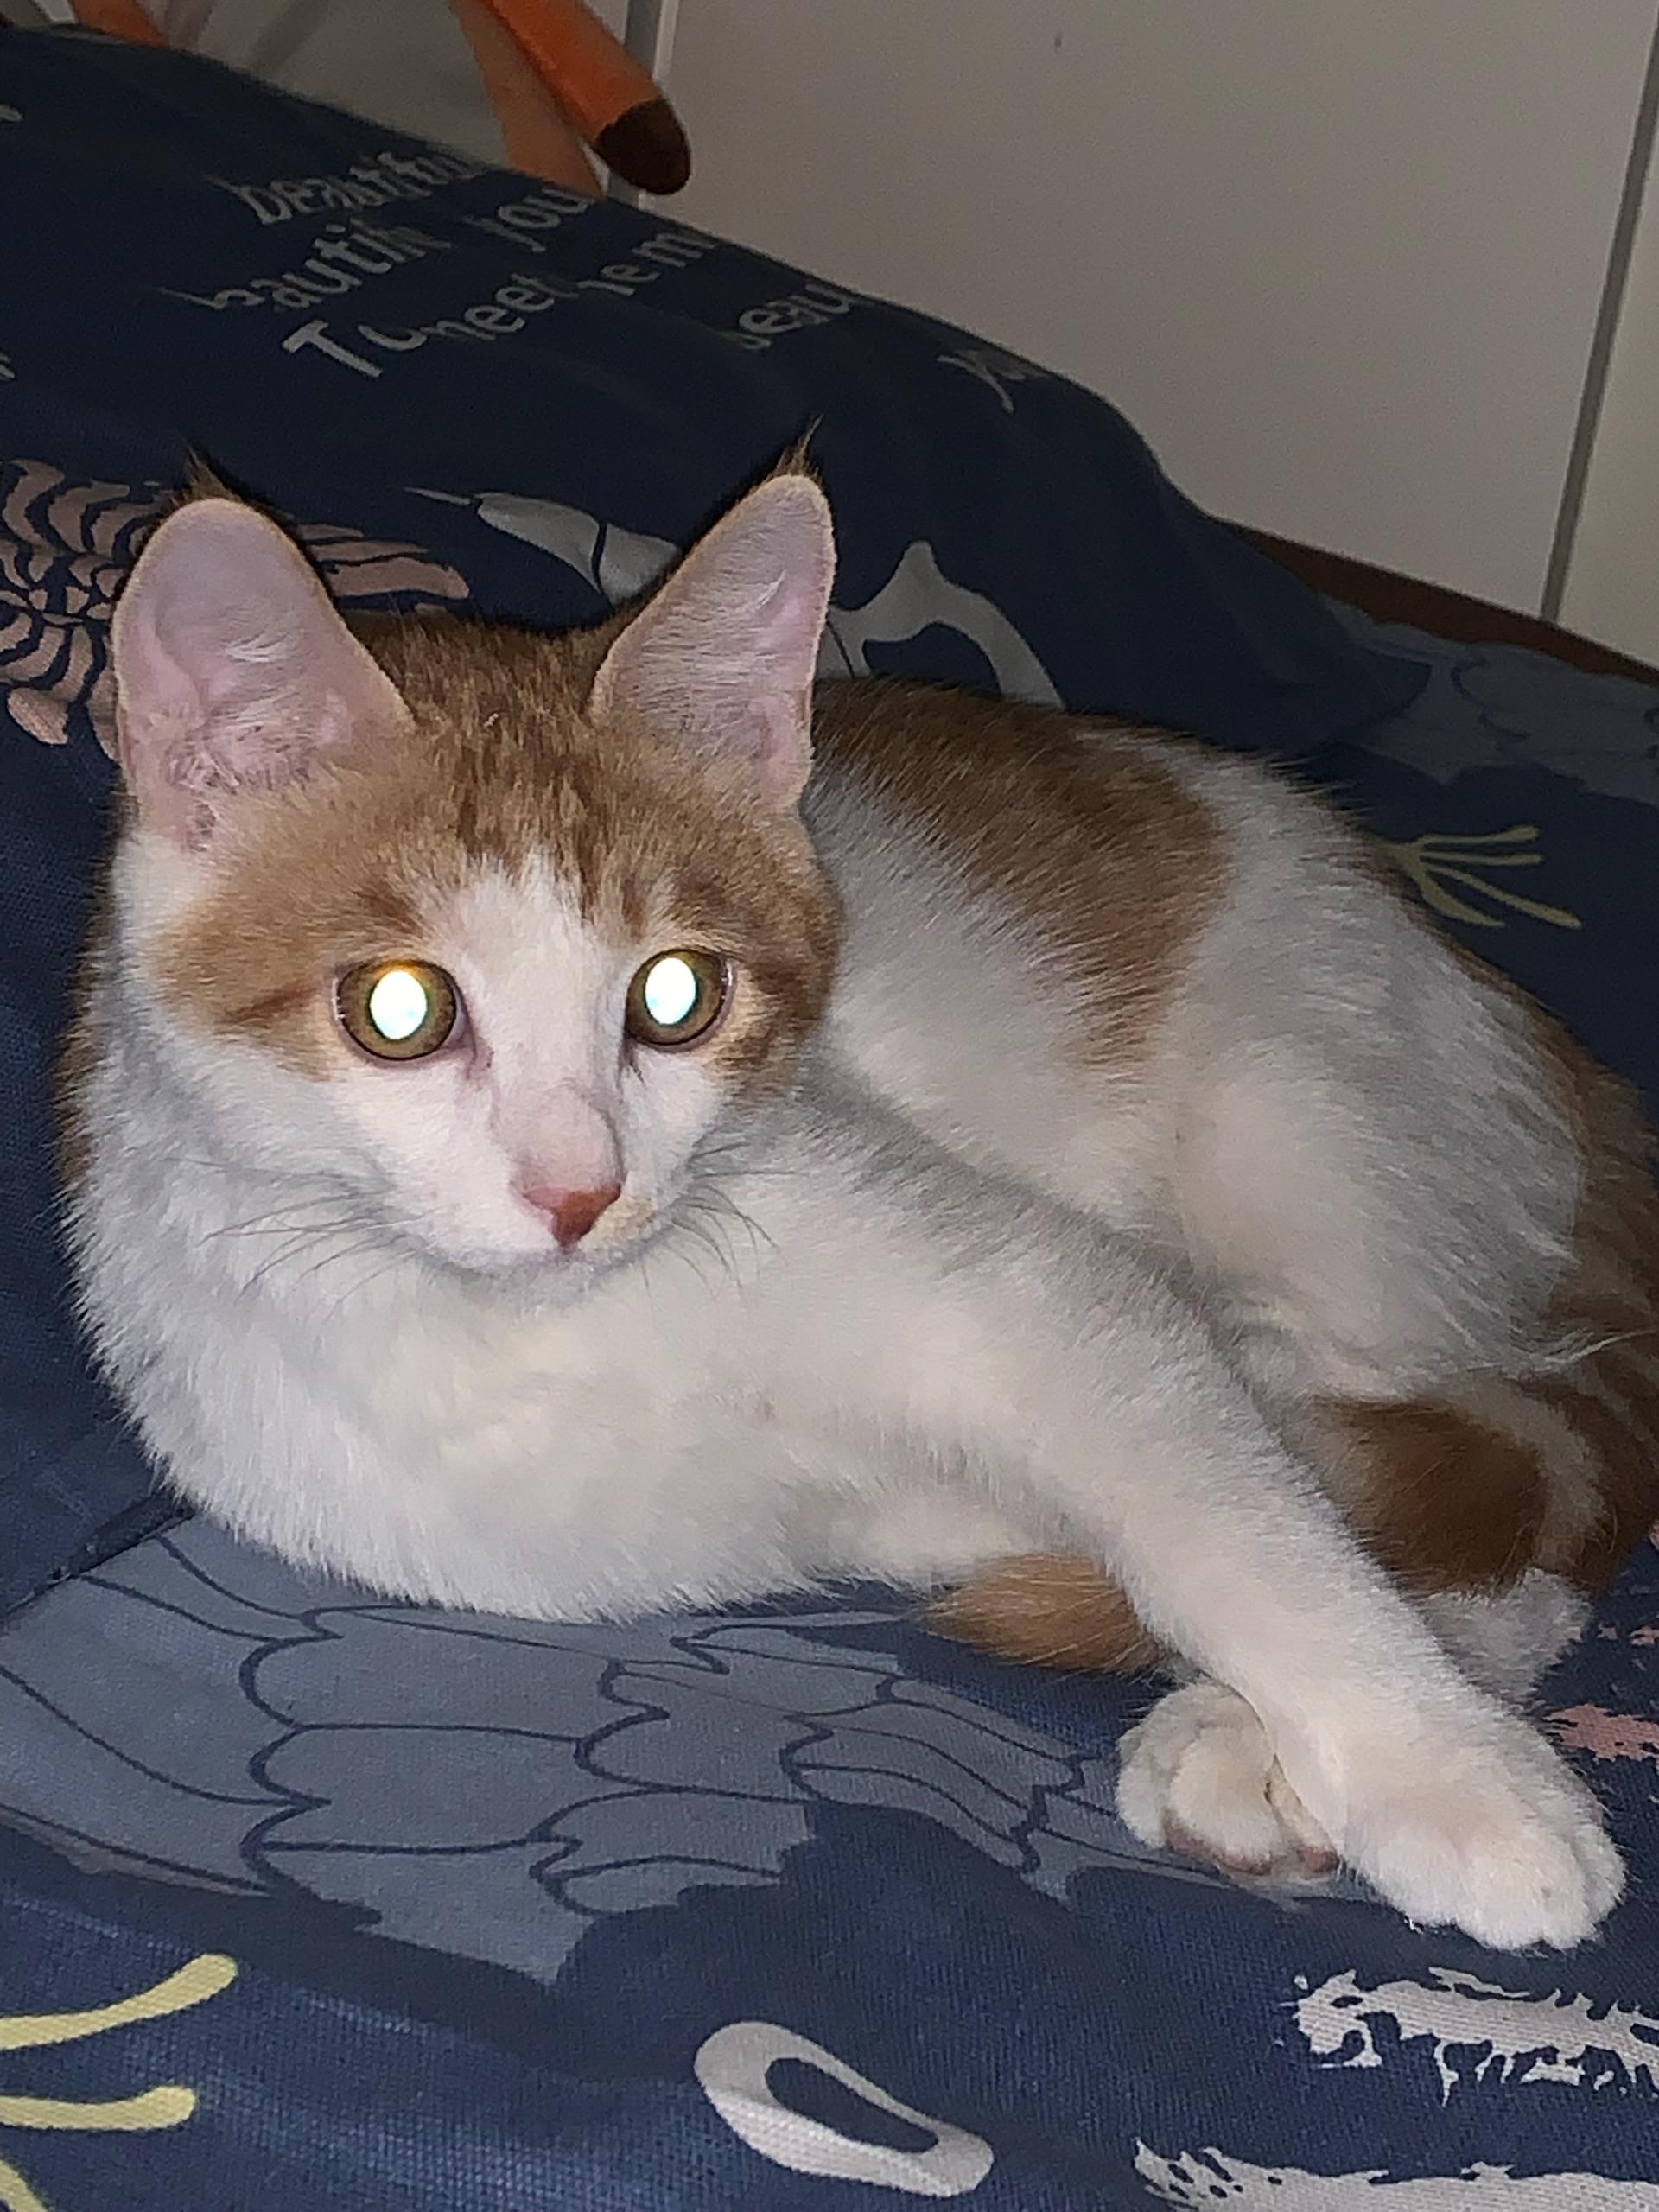 各位大佬有没有猫猫在晚上眼睛发光的图片? 